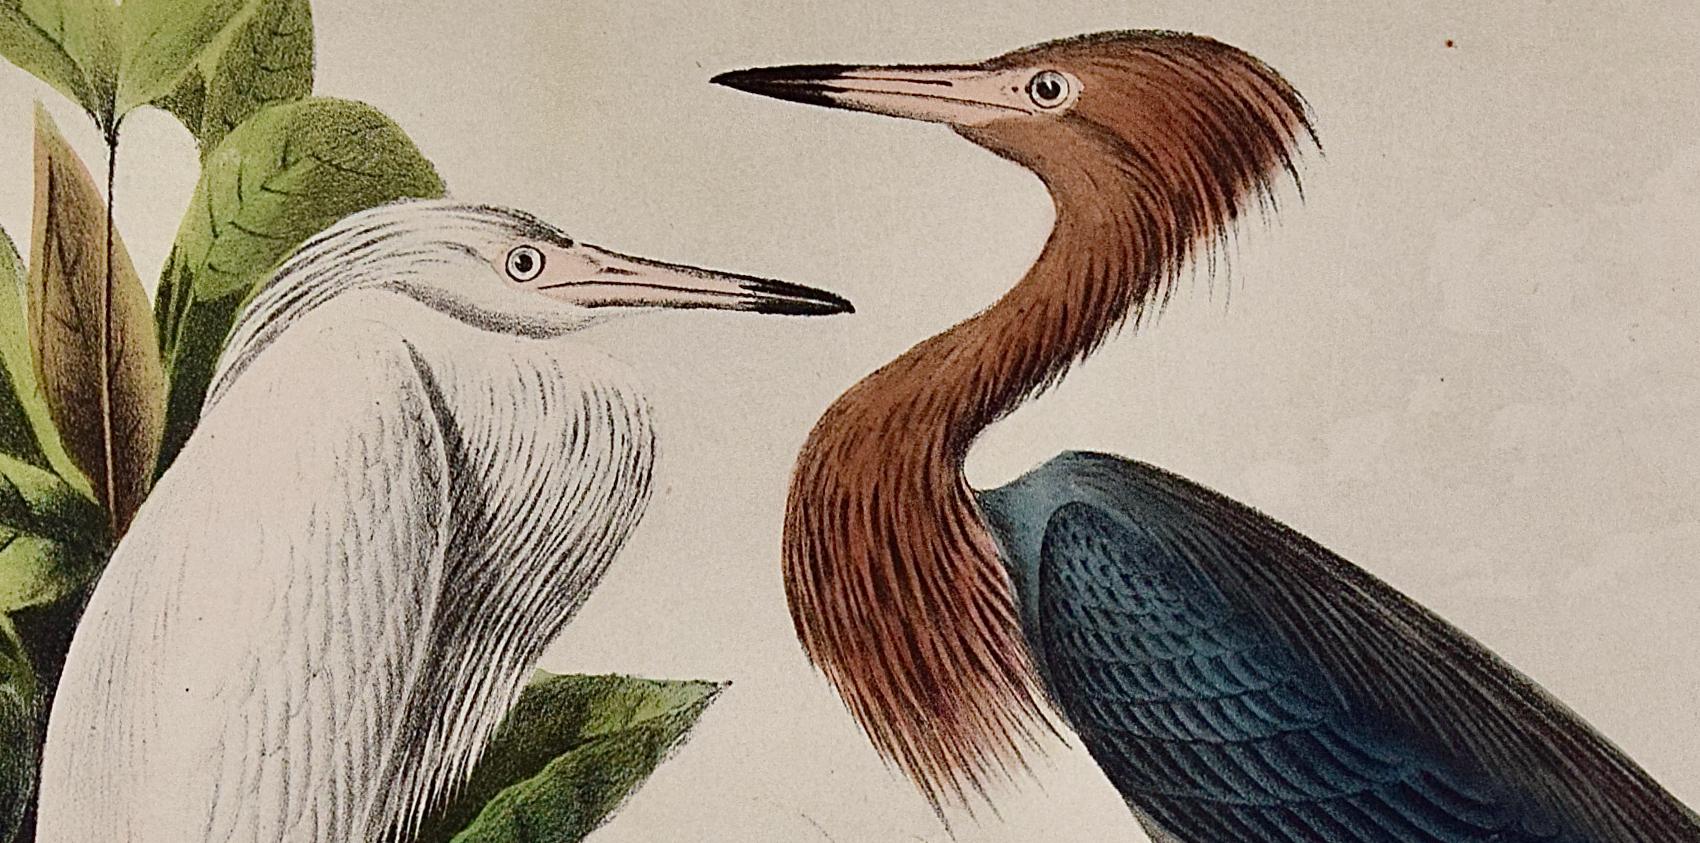 Audubons rougeâtres, adult & Young : une lithographie originale d'oiseaux colorée à la main  - Naturalisme Print par John James Audubon